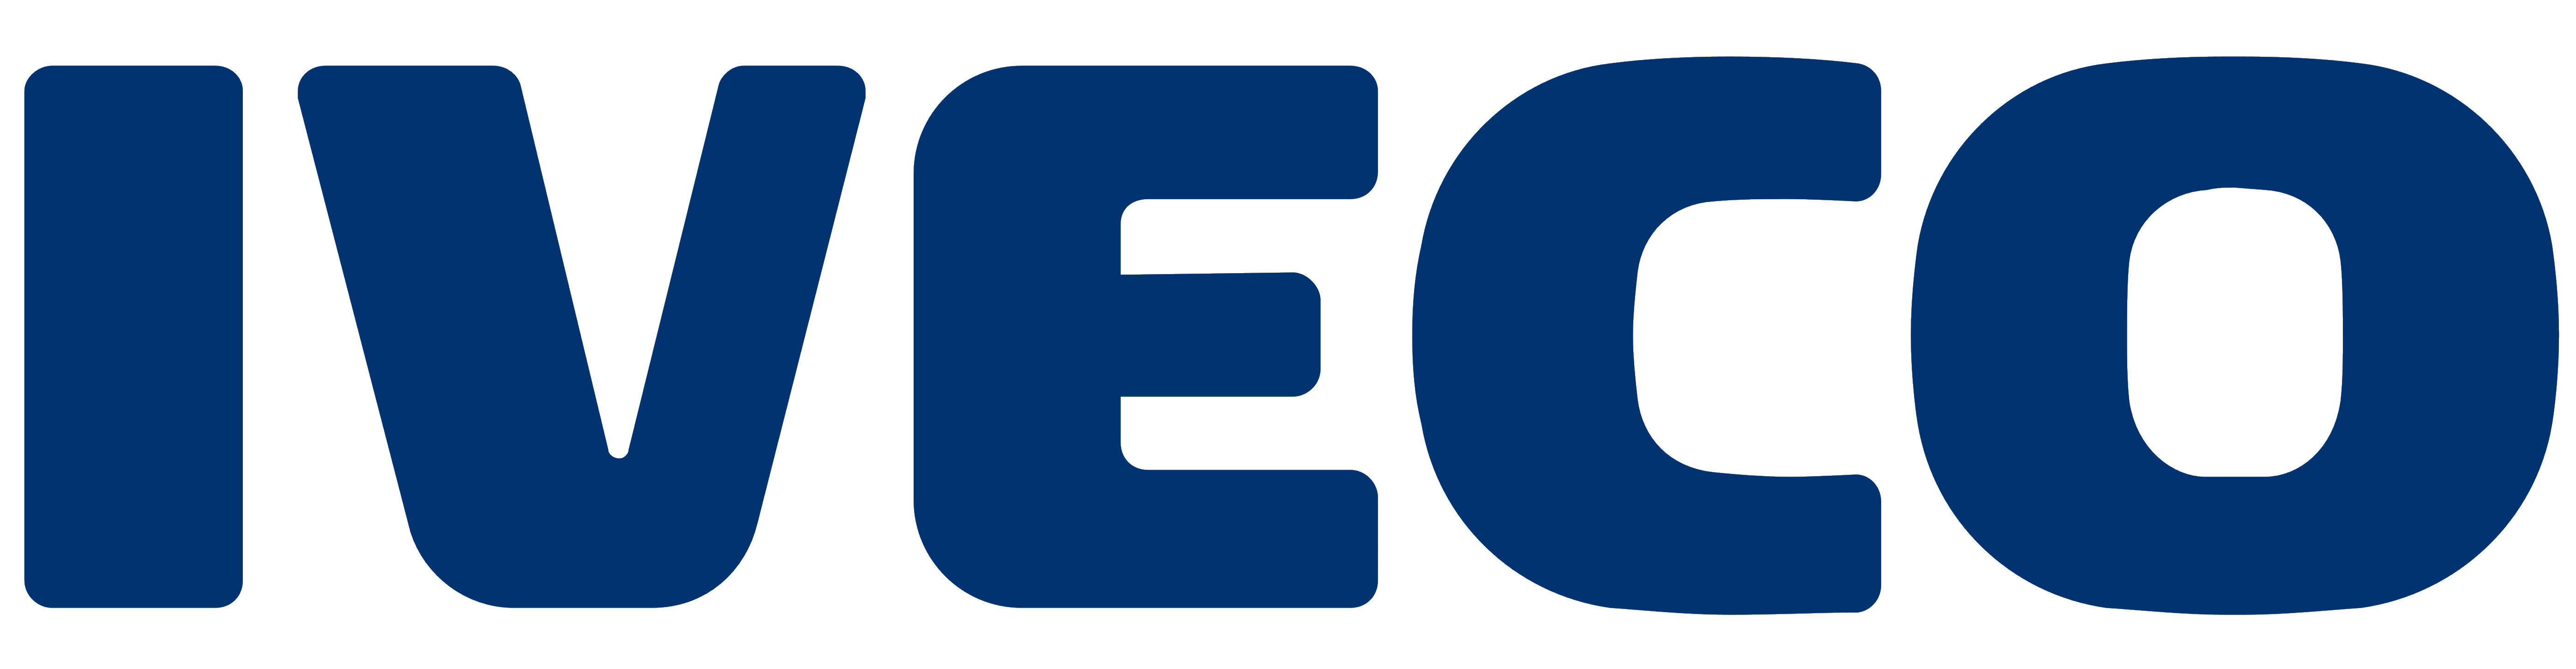 Iveco logo, logotype